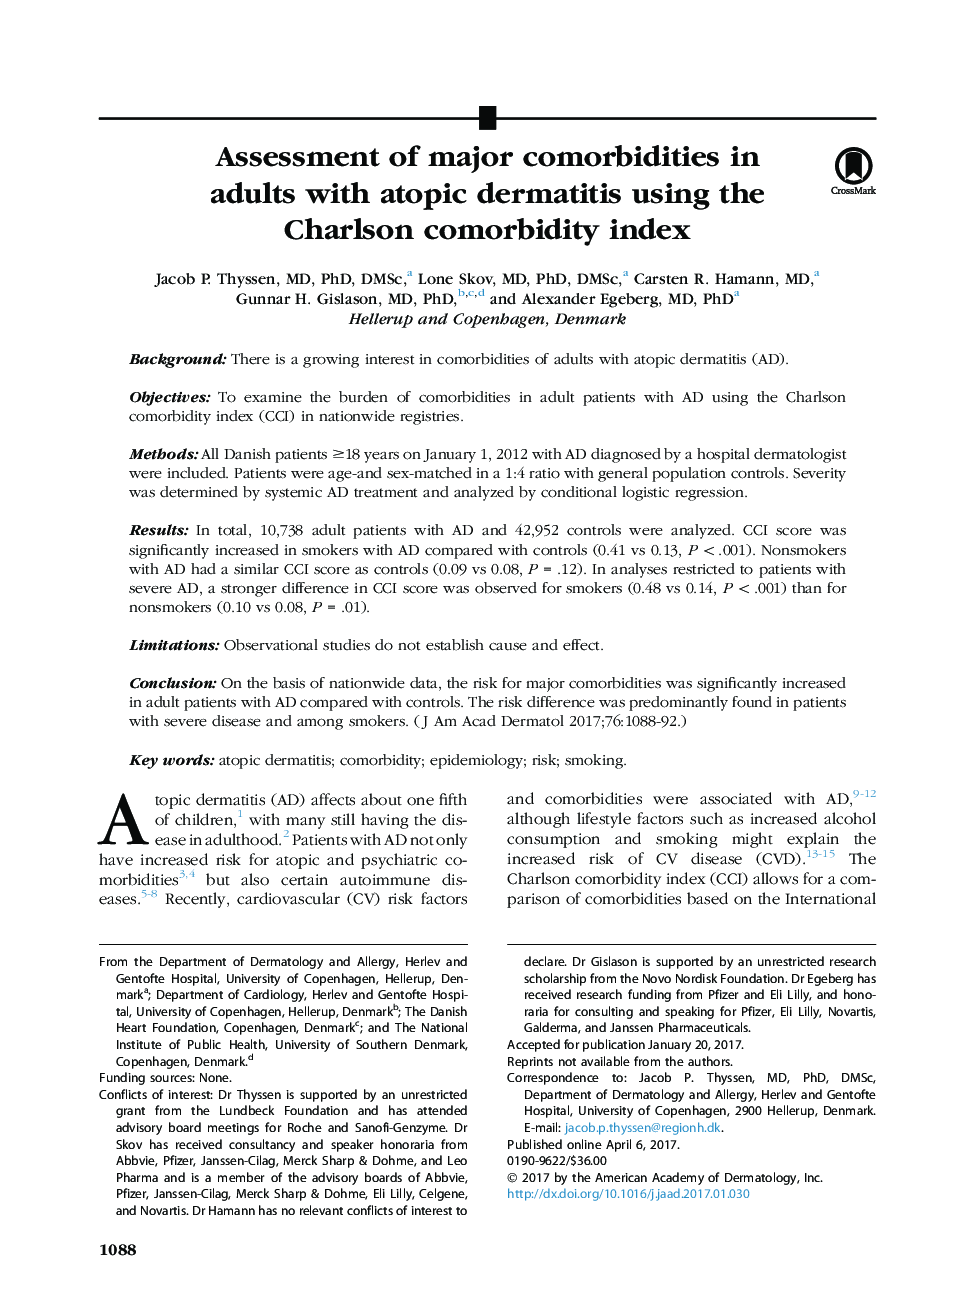 ارزیابی ترکیبات عمده در بزرگسالان مبتلا به درماتیت آتوپیک با استفاده از شاخص همبستگی چارلزون 